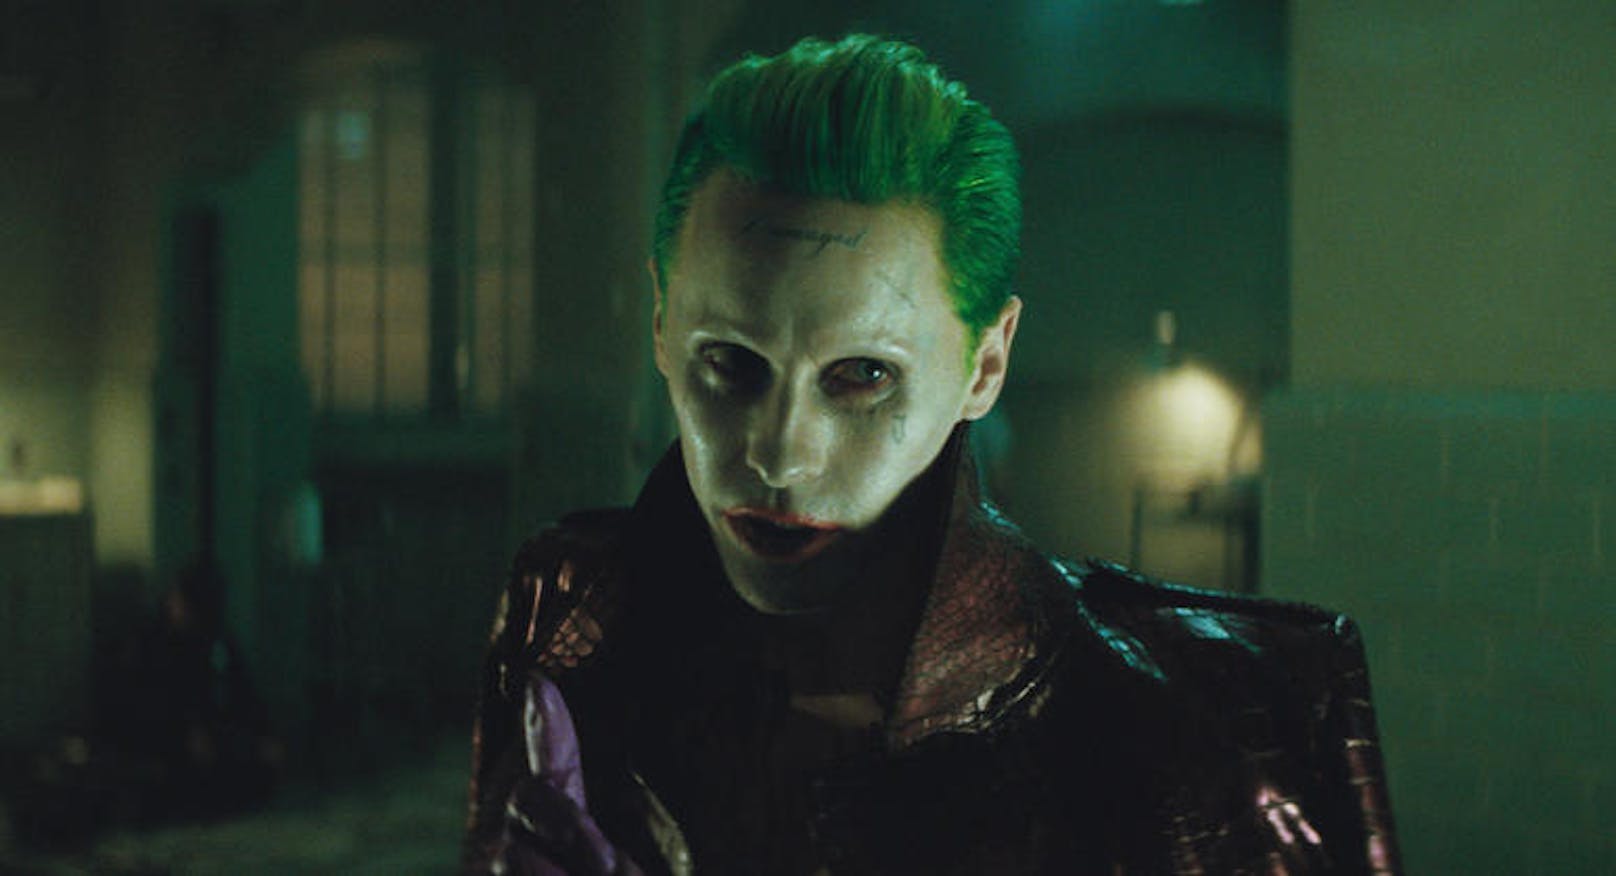 Kein Scherz: Jared Leto spielt wieder den "Joker"